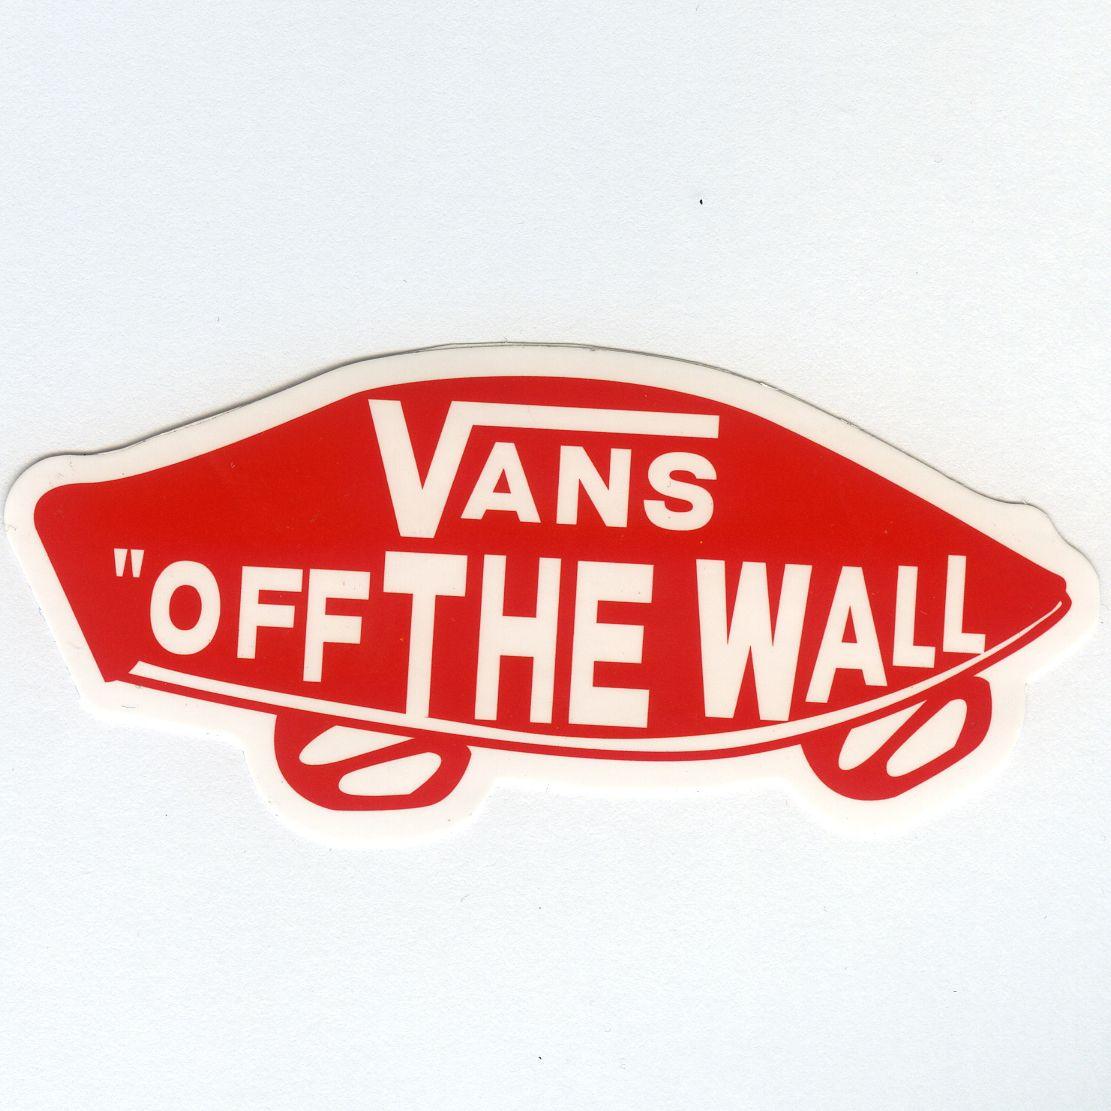 Vans Wall Logo - 1067 VANS OFF THE WALL Logo, Width 8 cm, decal sticker - DecalStar.com